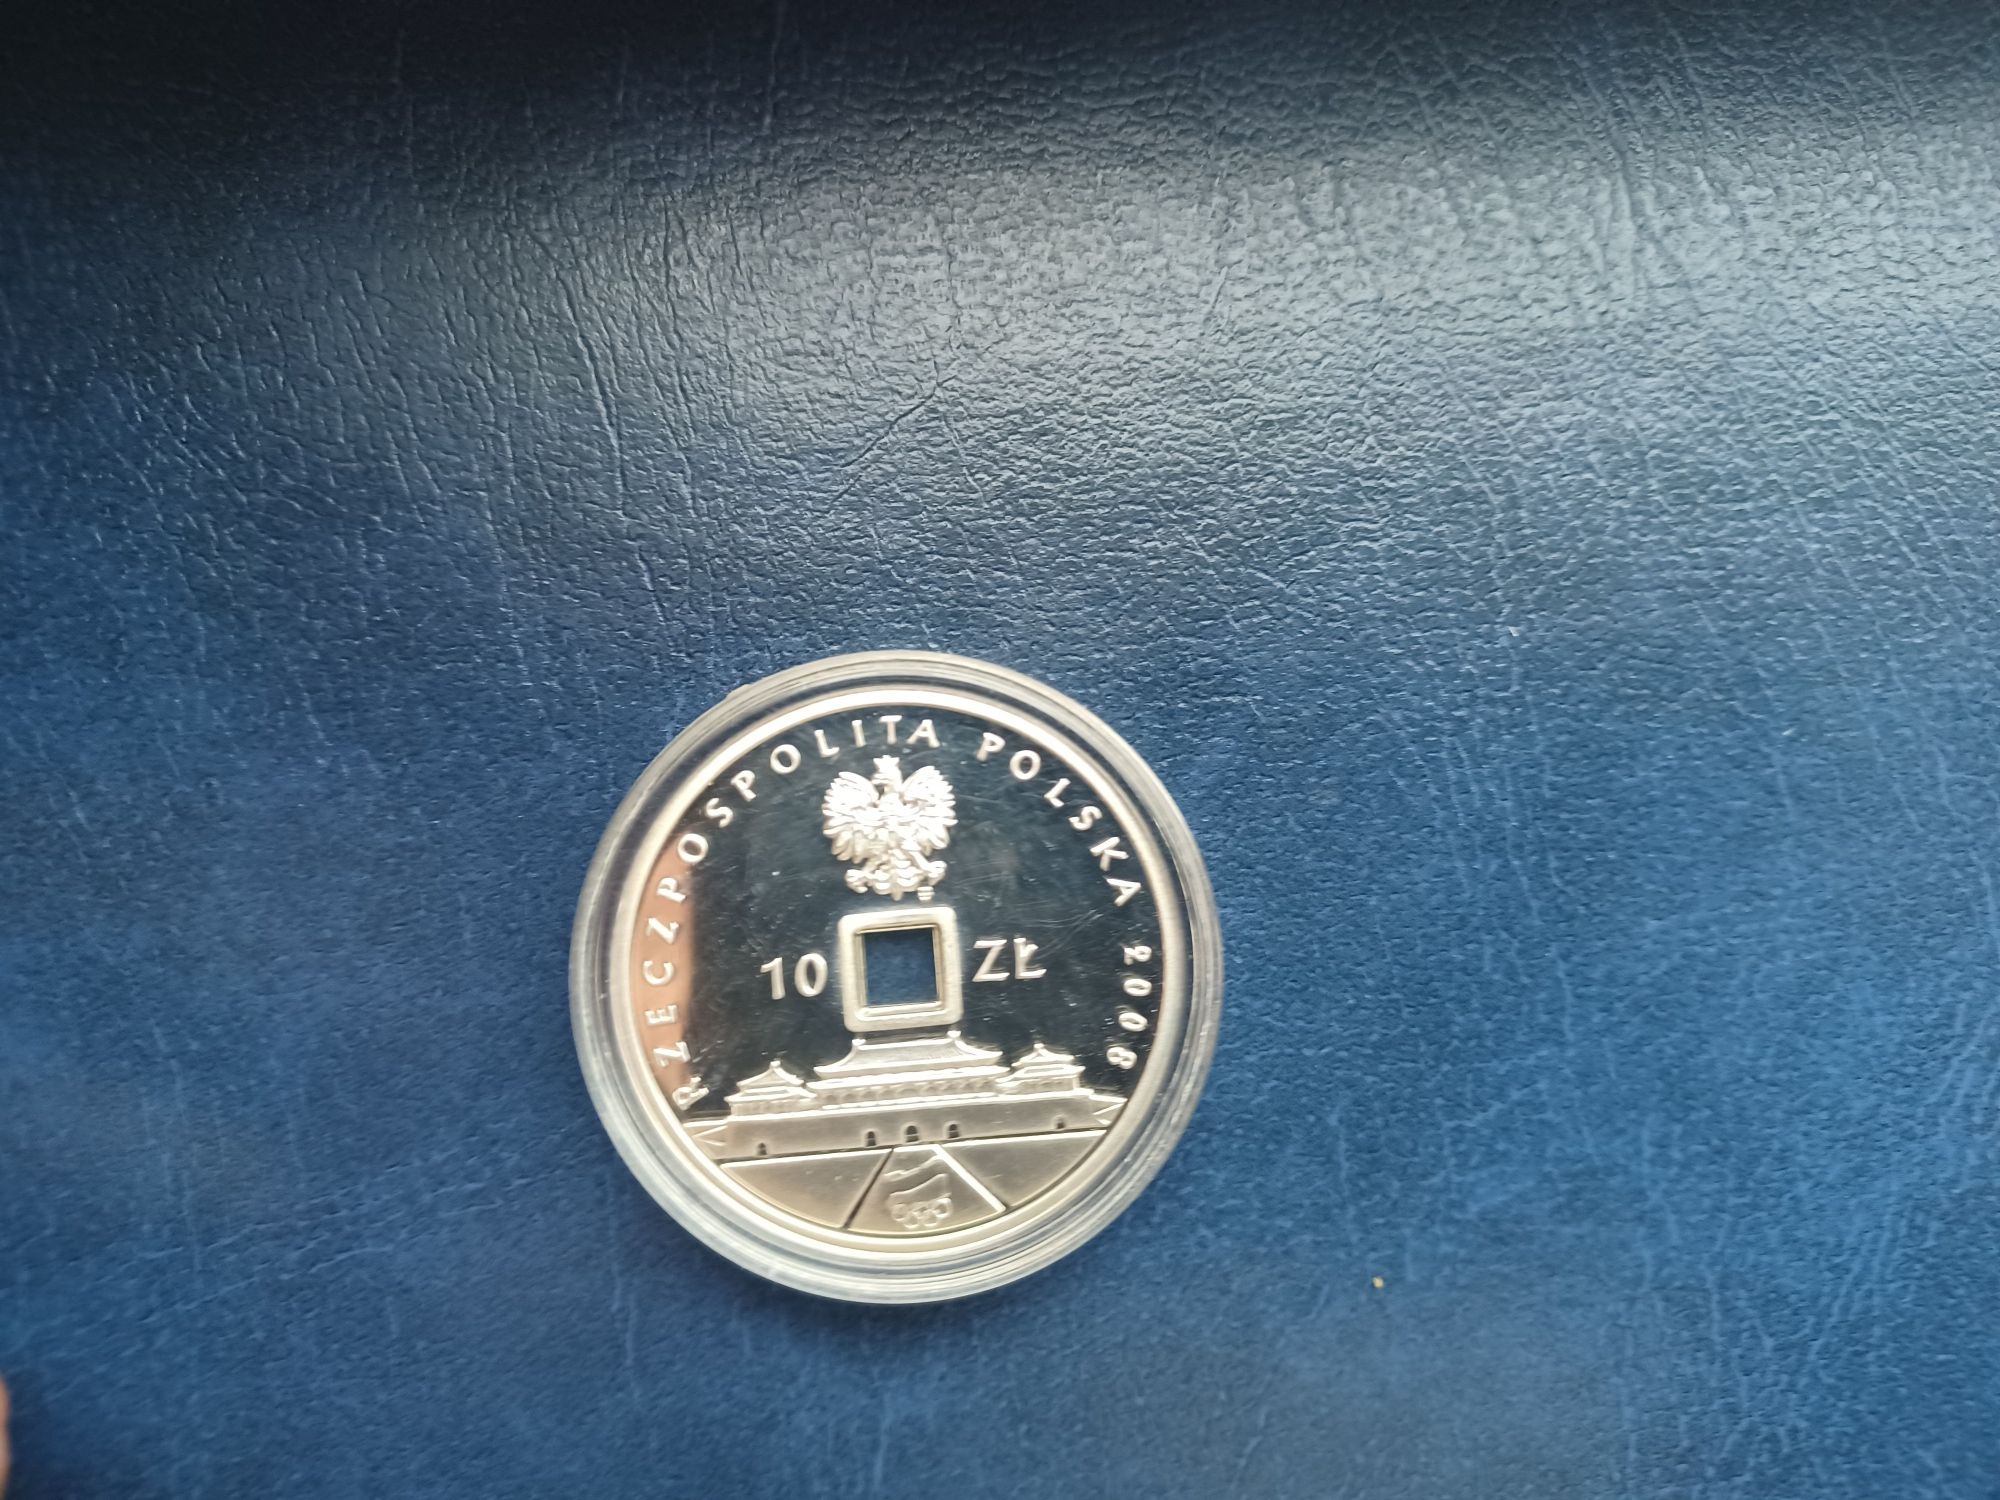 Moneta srebrna 10 zł Pekin 2008 NBP